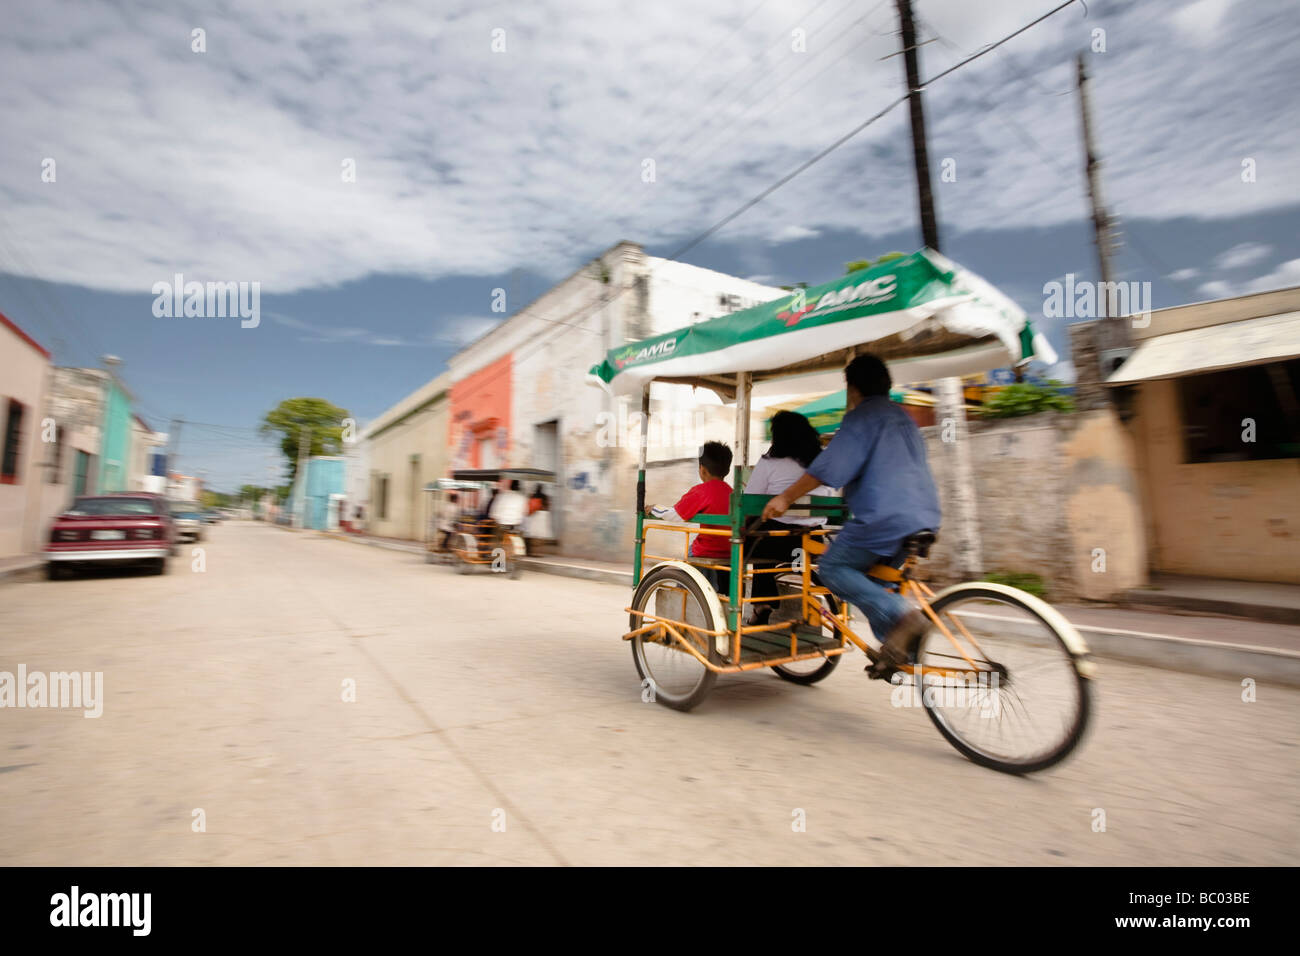 Ein Mann reitet auf einem Dreirad Taxi in Campeche, Mexiko. Stockfoto